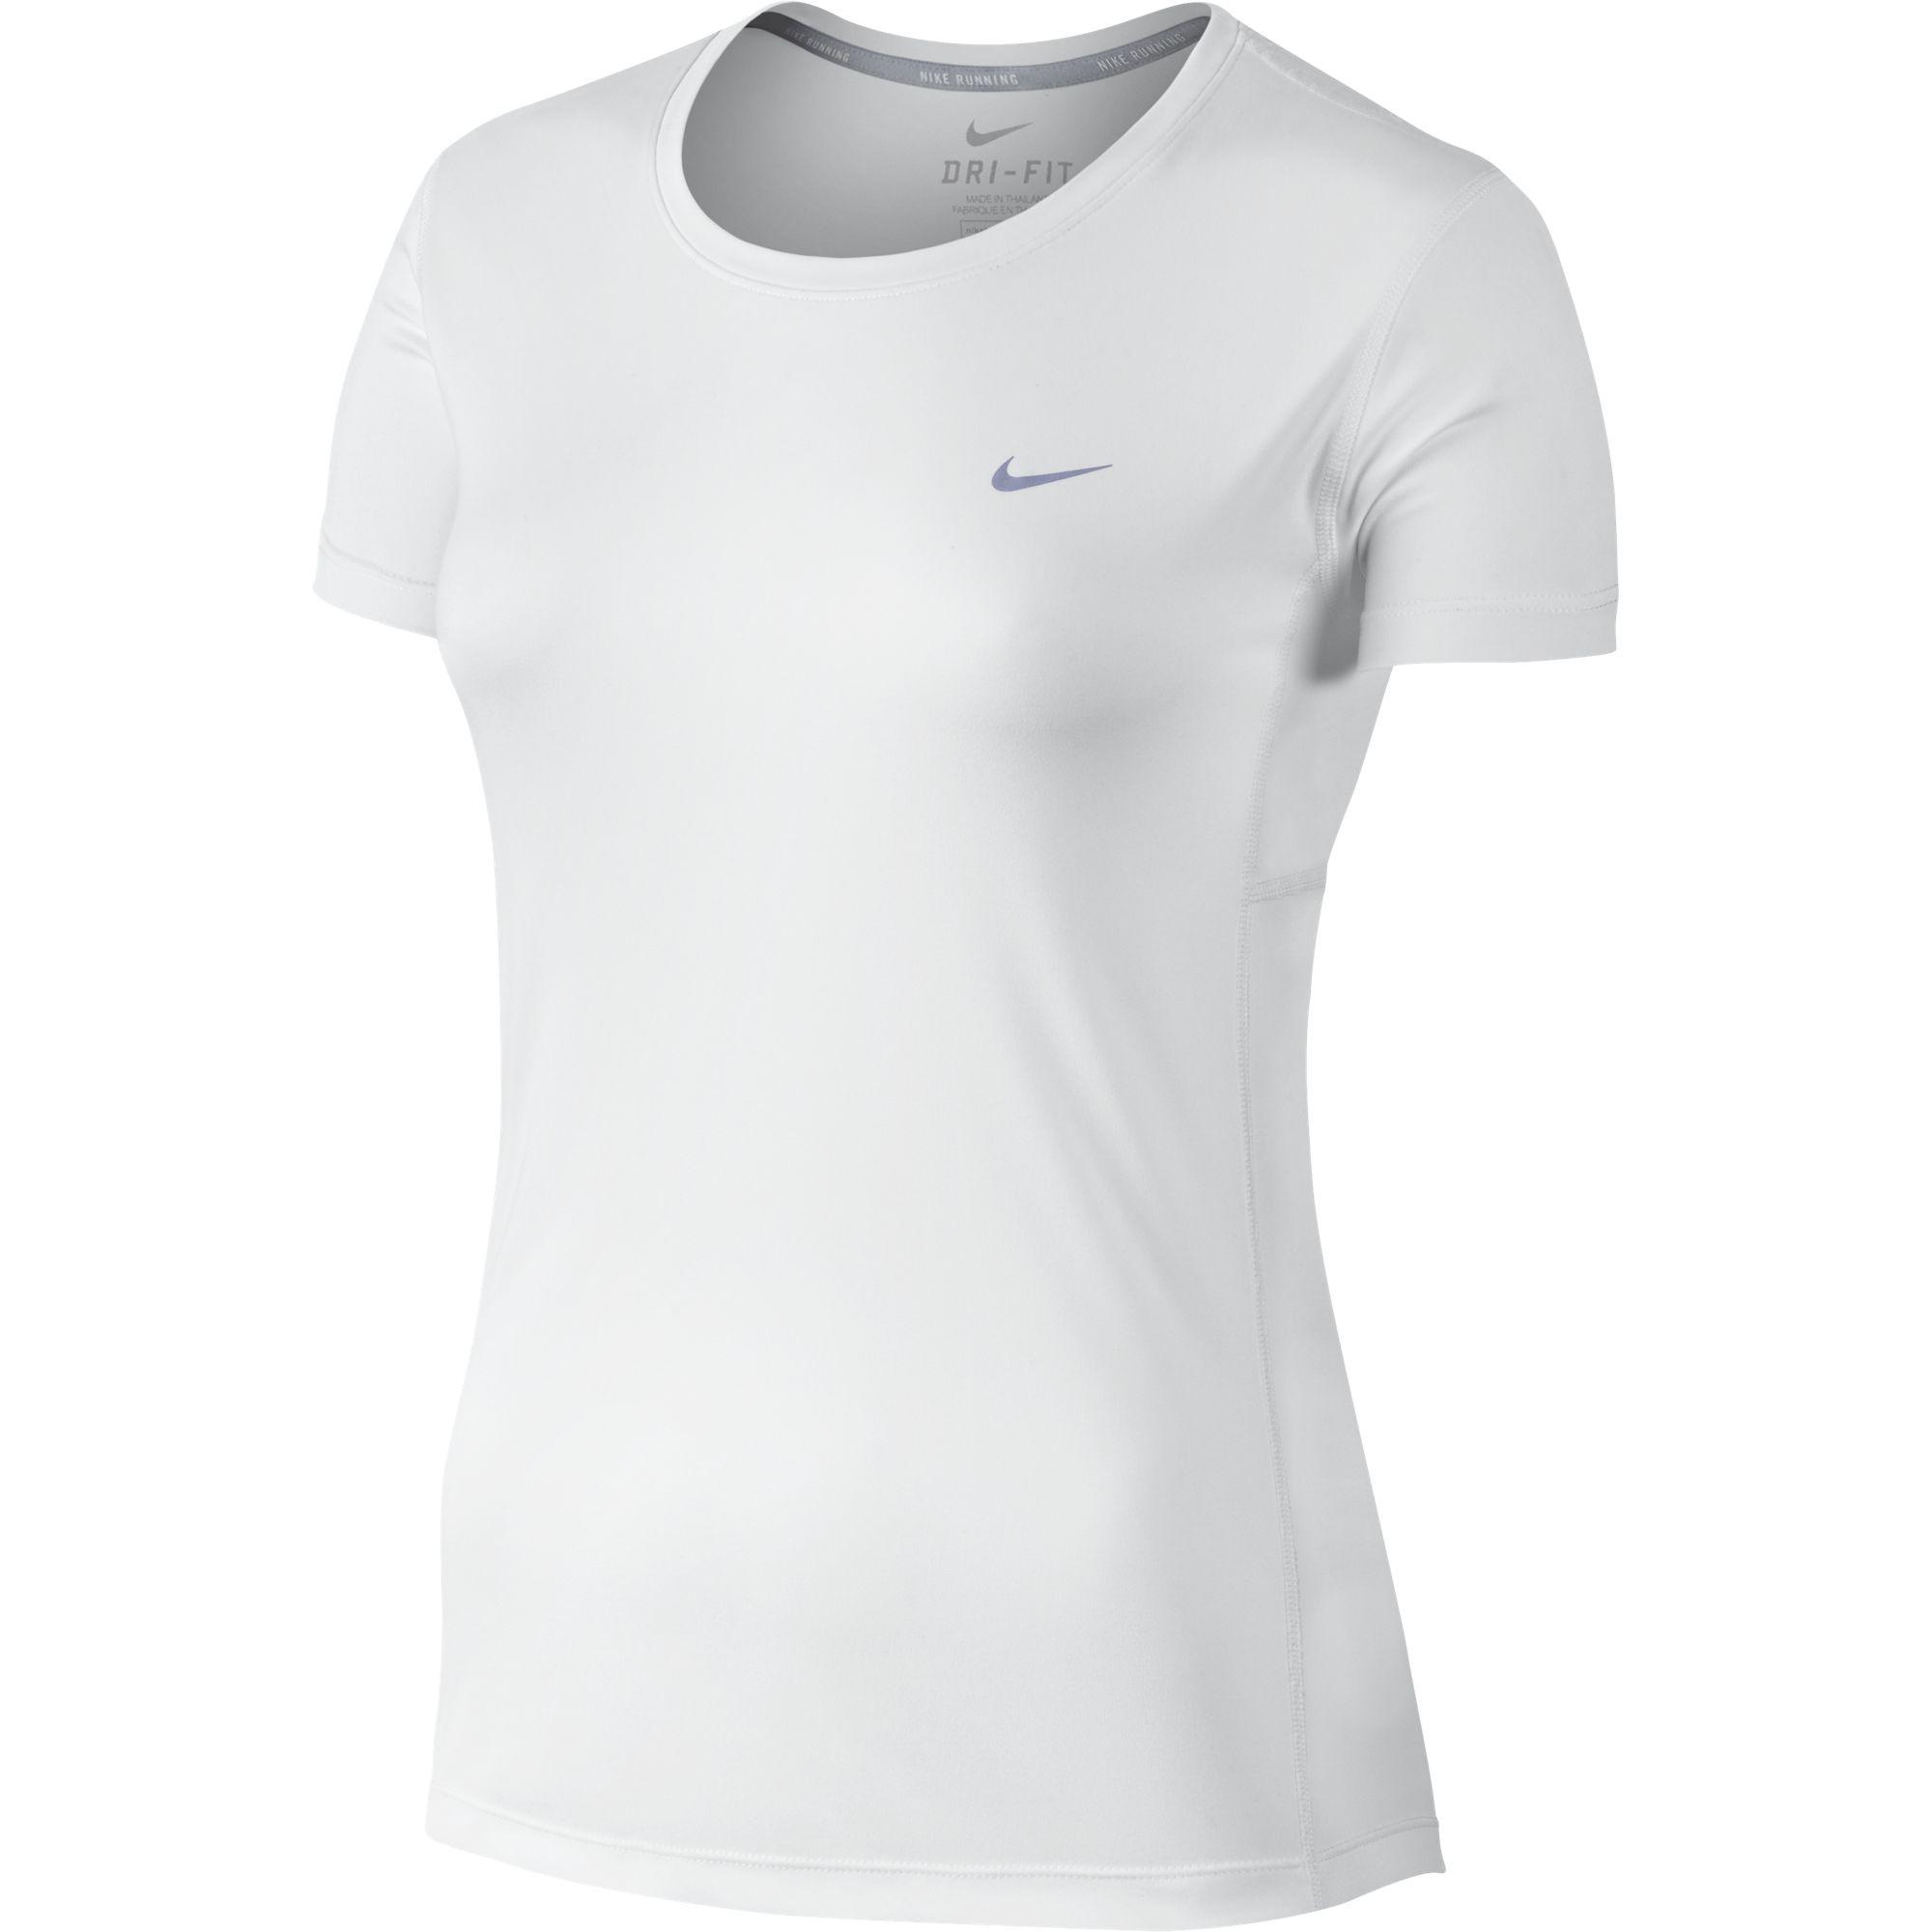 Купить женские футболки оптом. Nike Dri Fit Miler short Sleeve t-Shirt. Футболка женская Nike Dri-Fit Legend. Футболка найк драй фит женская. Nike Dri Fit майка женская.